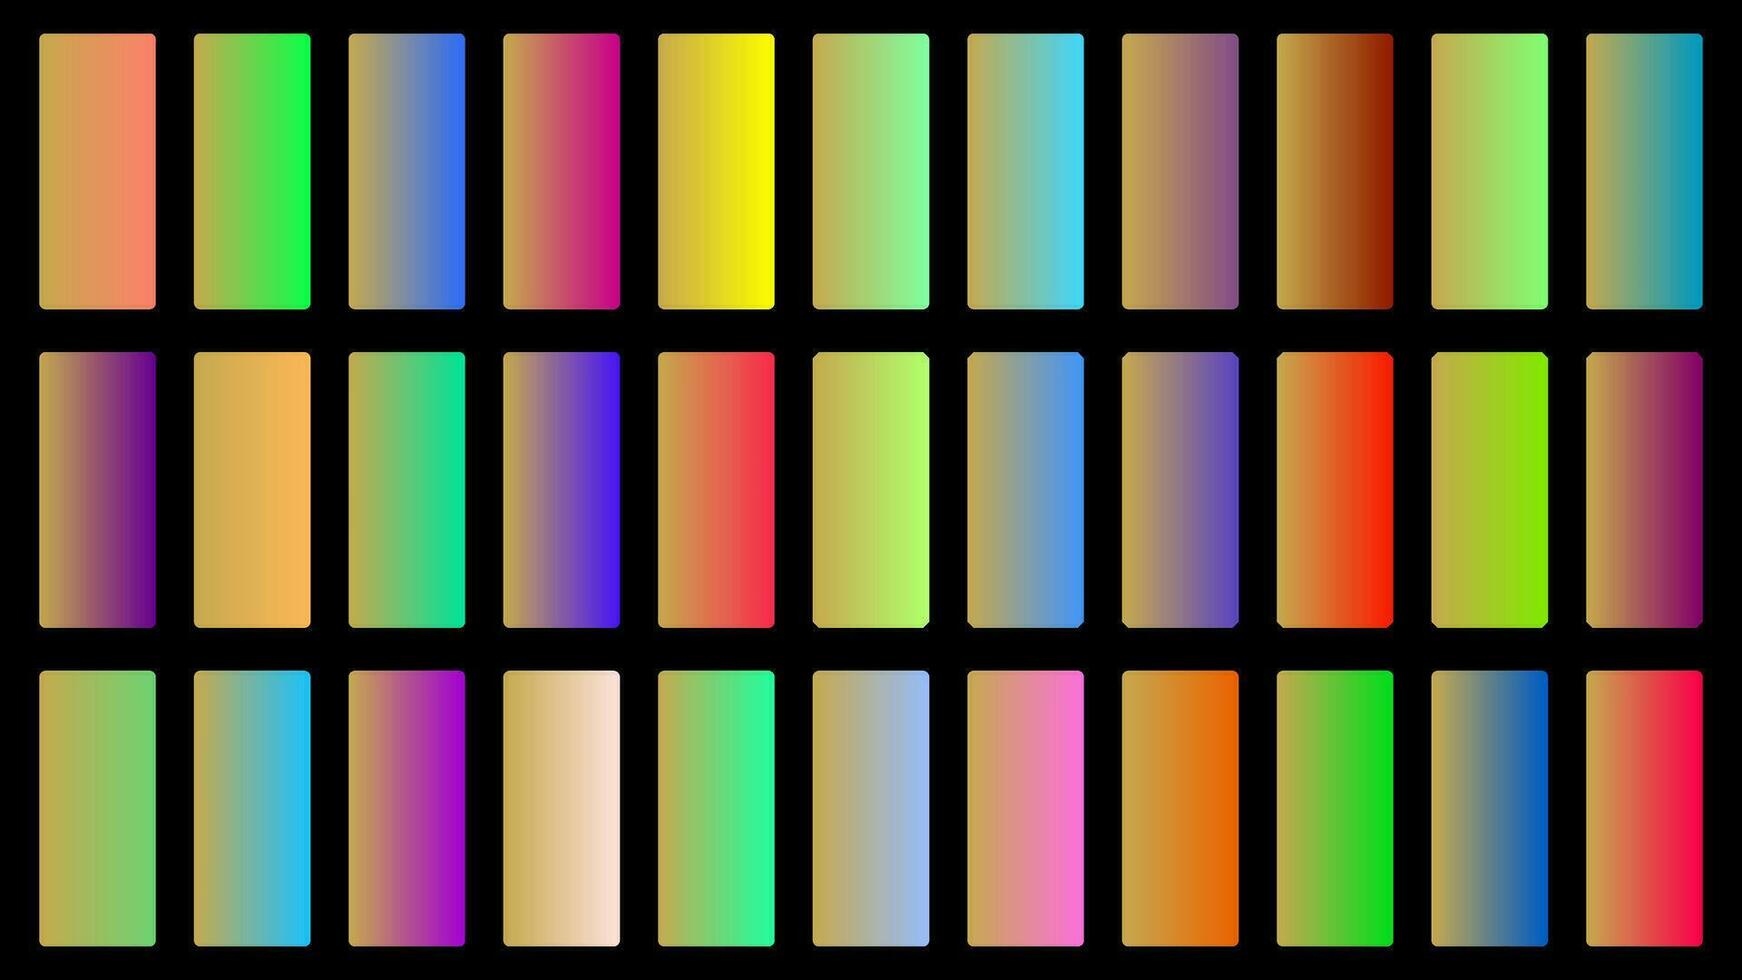 vistoso adular color sombra lineal degradado paleta muestras web equipo redondeado rectángulos modelo conjunto vector